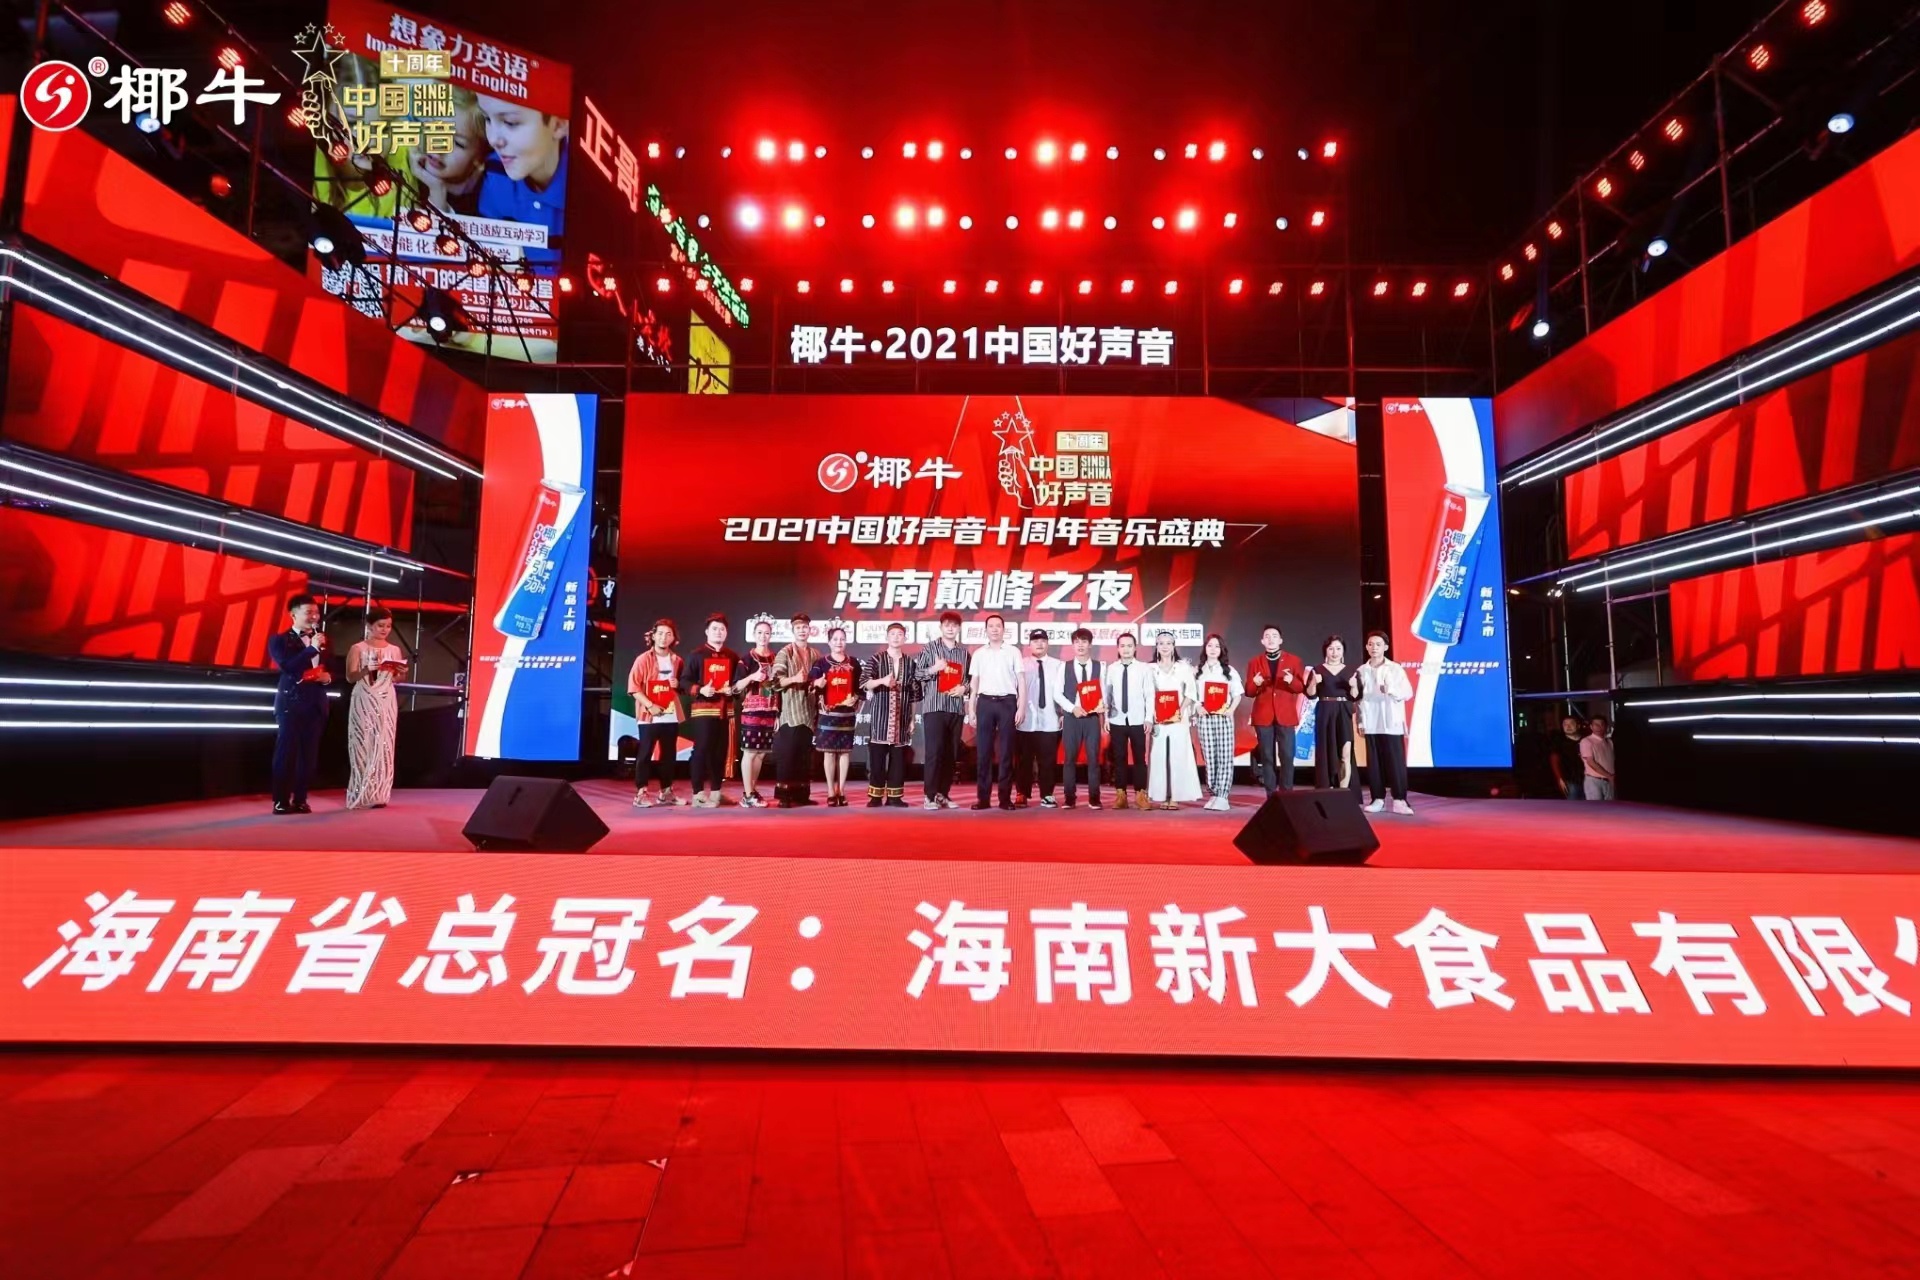 2021中国好声音十周年音乐盛典